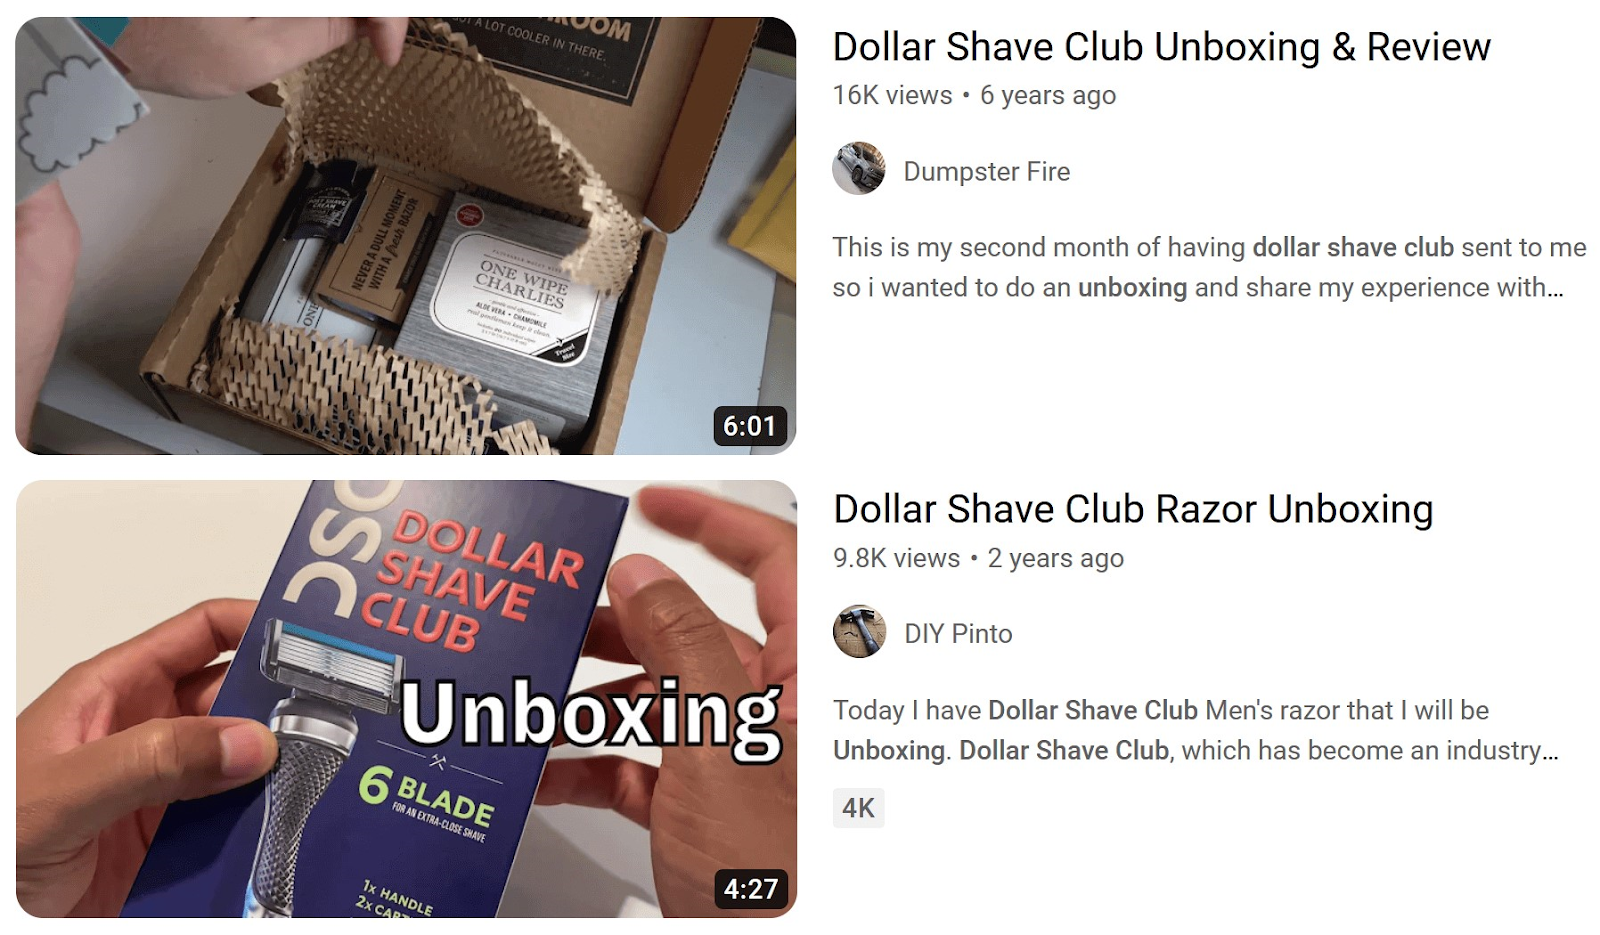 Vidéos de déballage du Dollar Shave Club sur YouTube